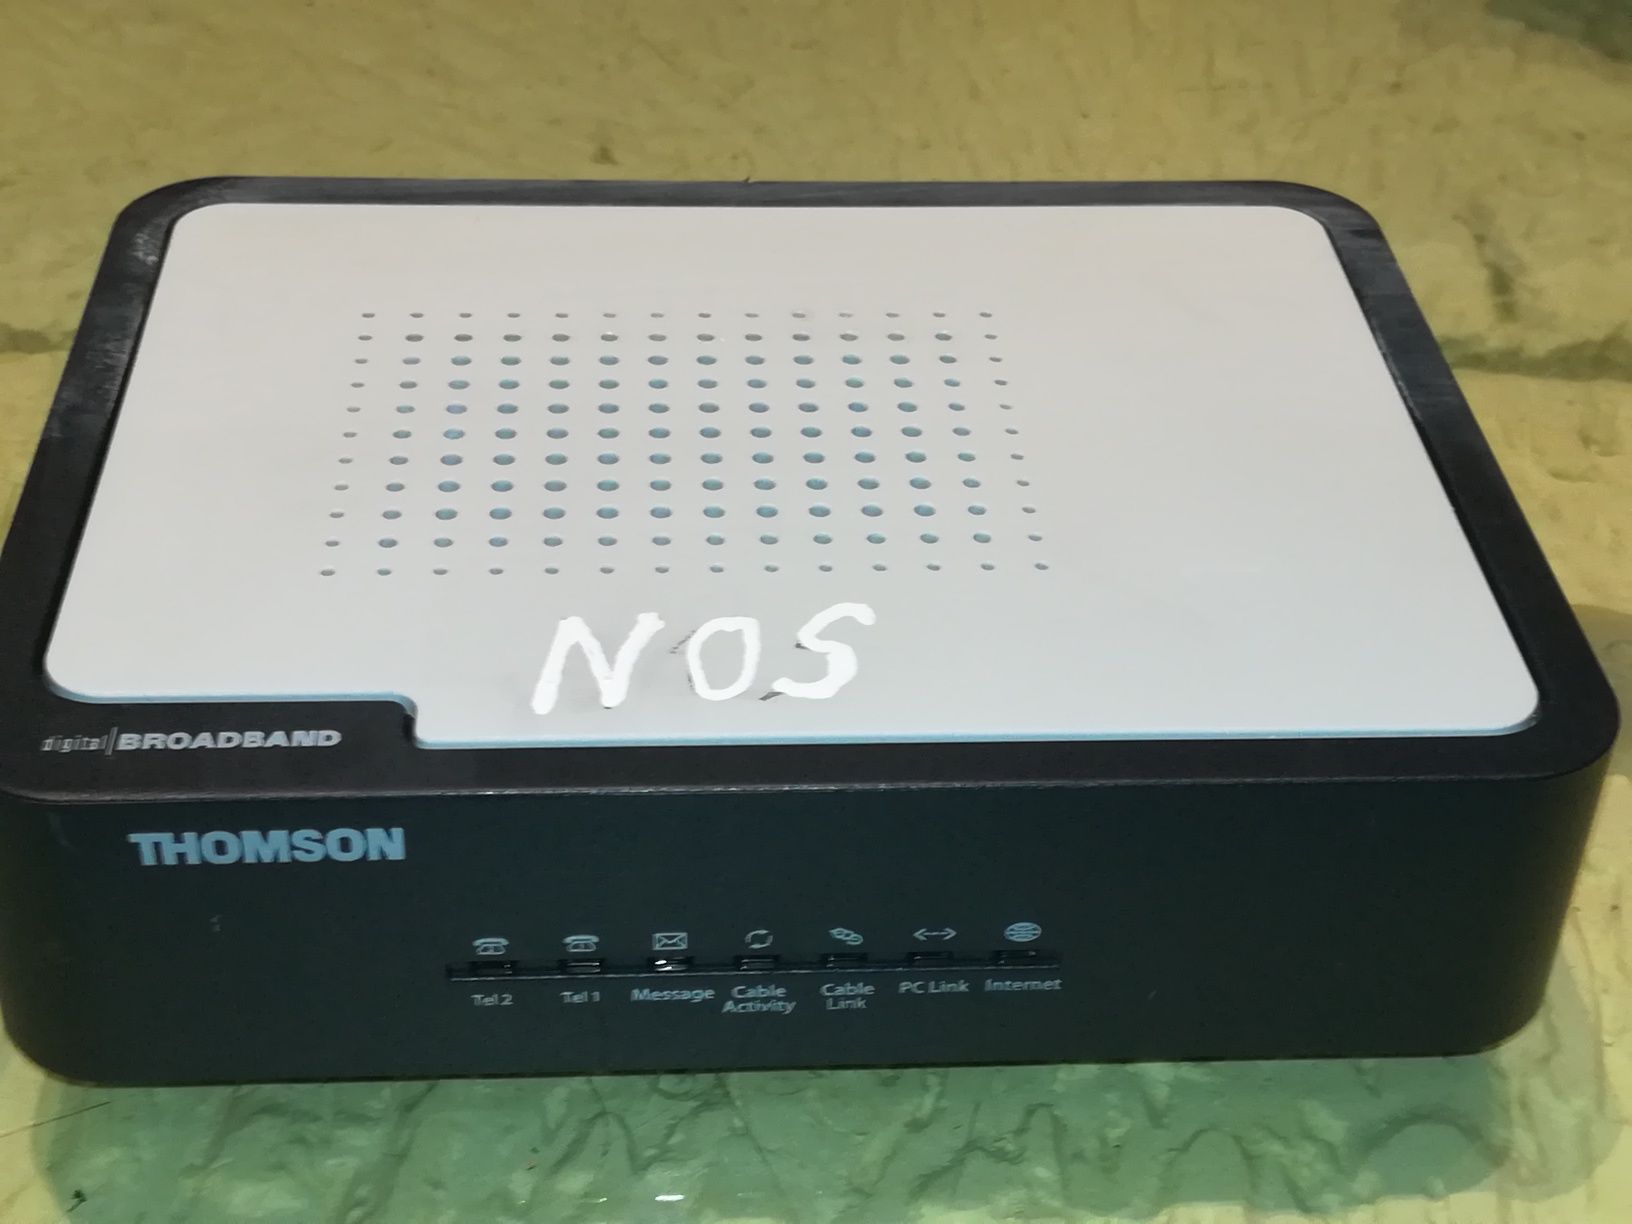 Modem /Router Thomson THG540 da NOS